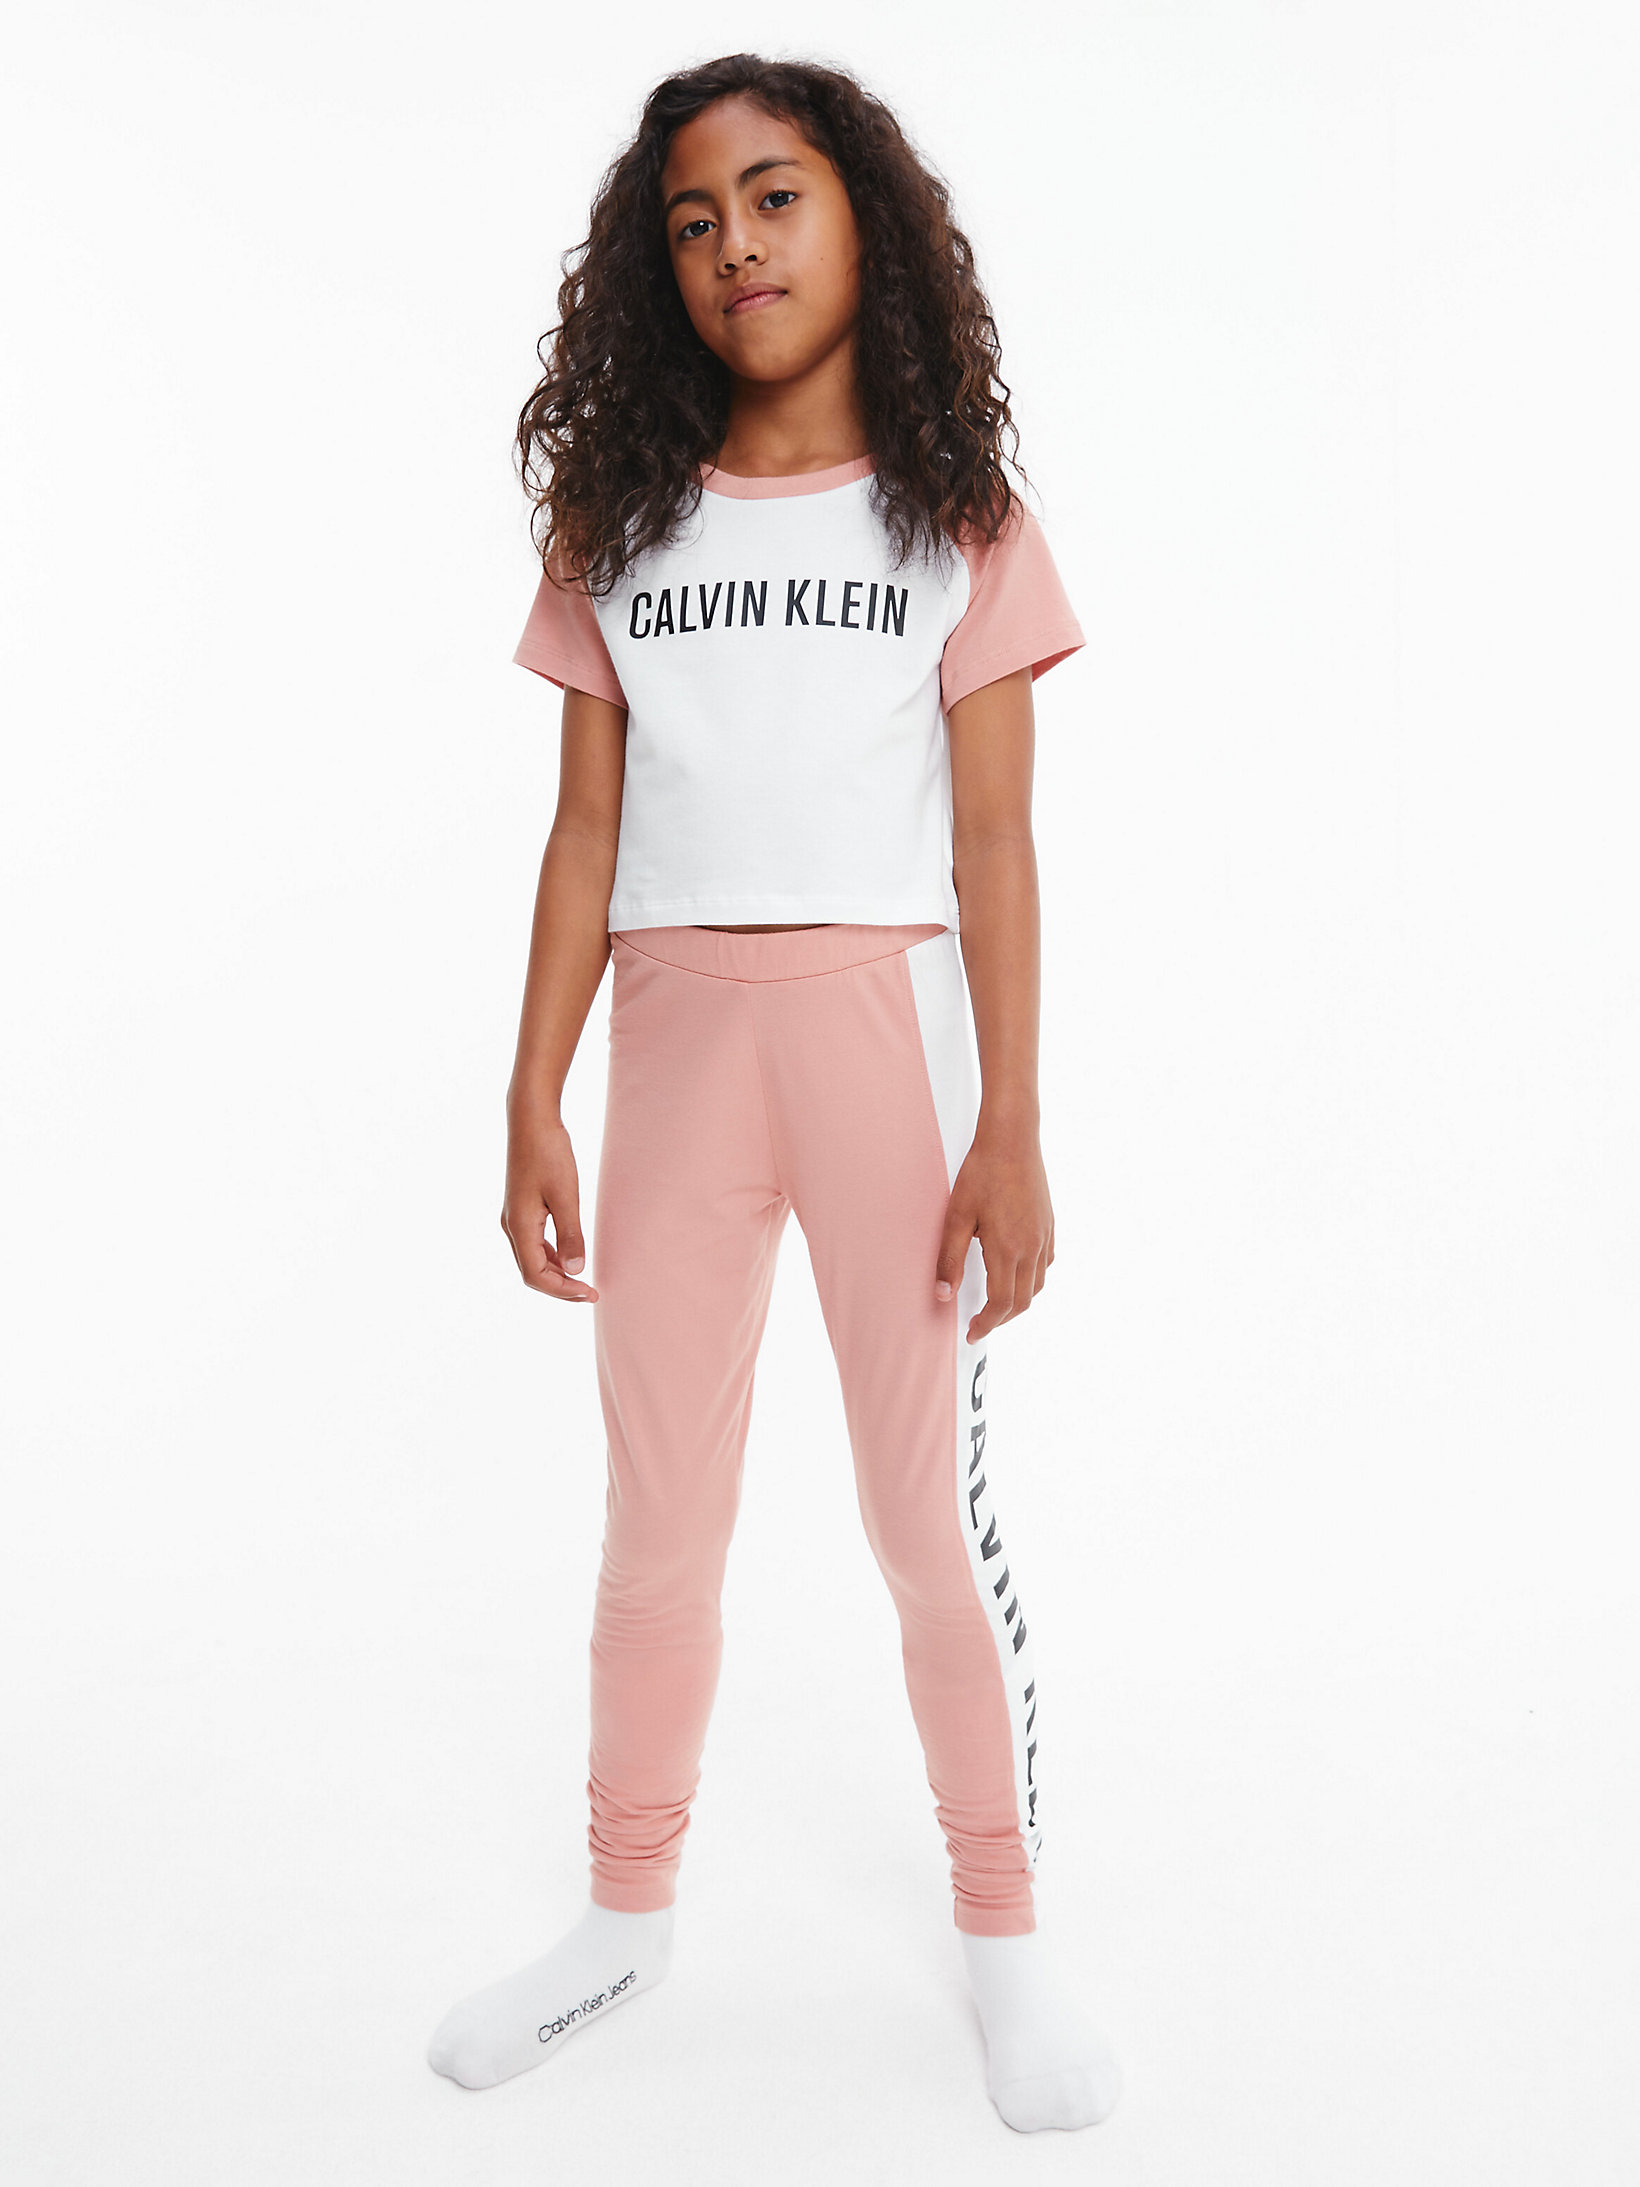 Pijama - Intense Power > Pinkmocha/w/pvhwhite > undefined girls > Calvin Klein